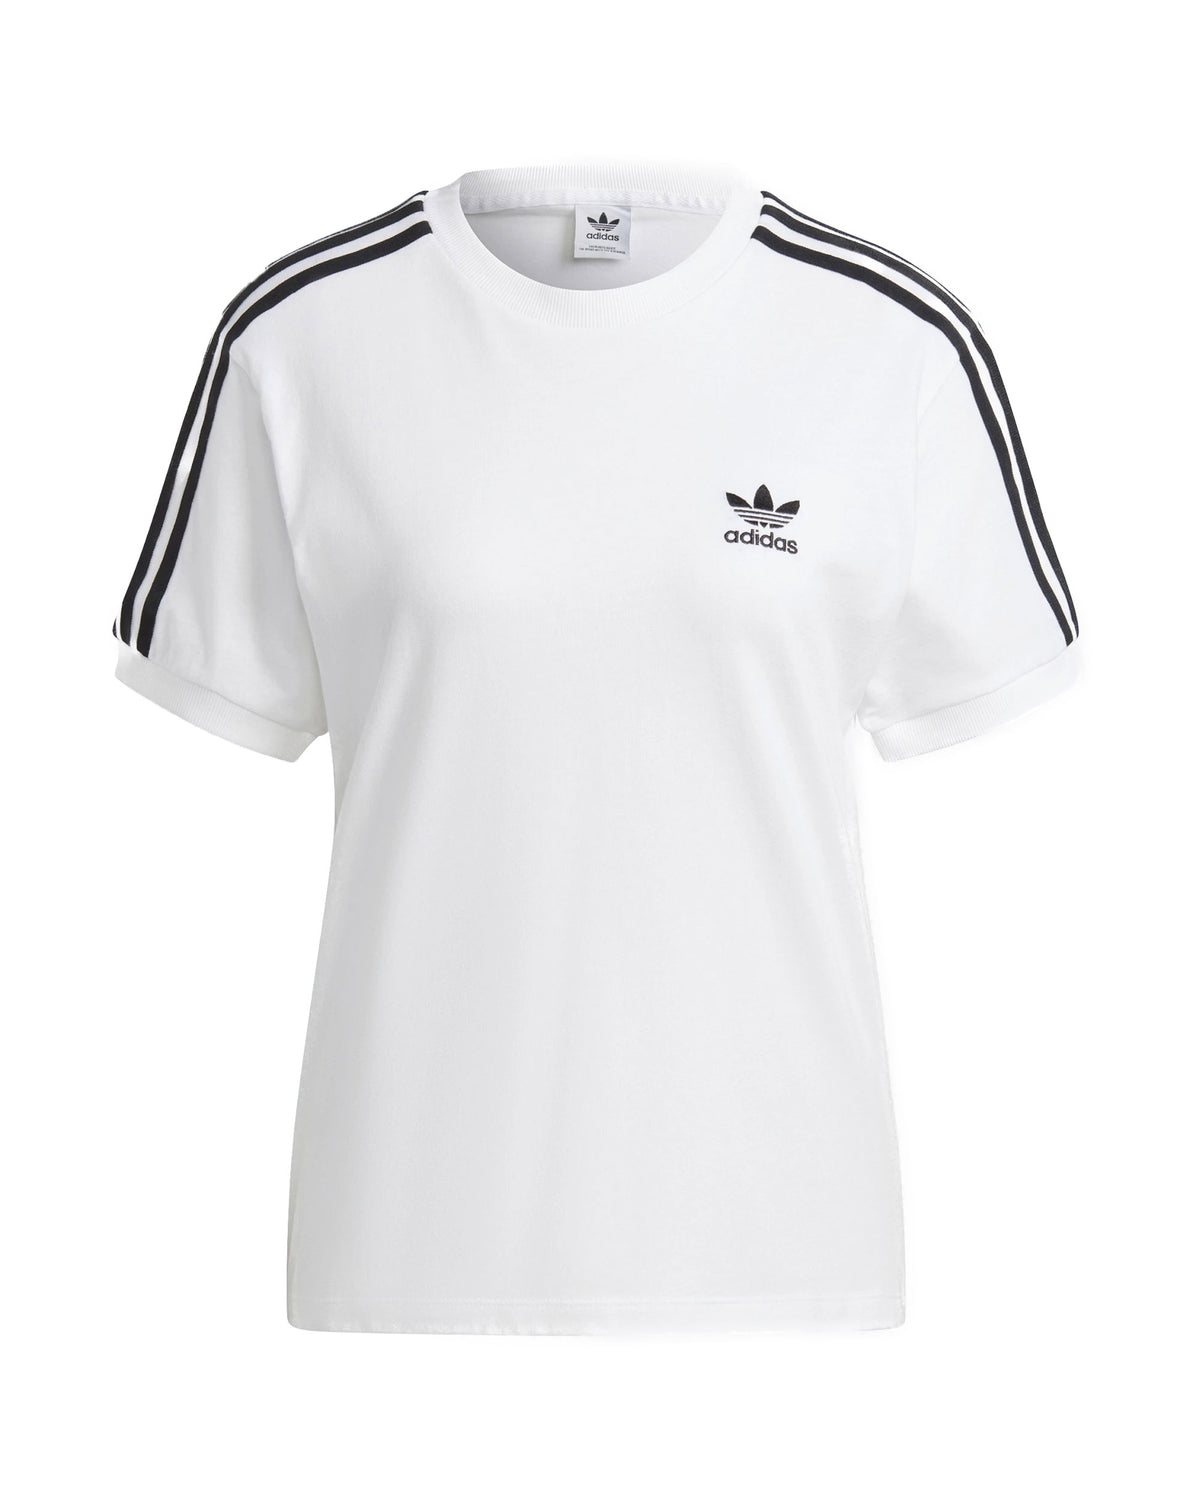 Adidas Originals 3 Stripes T-shirt Bianco